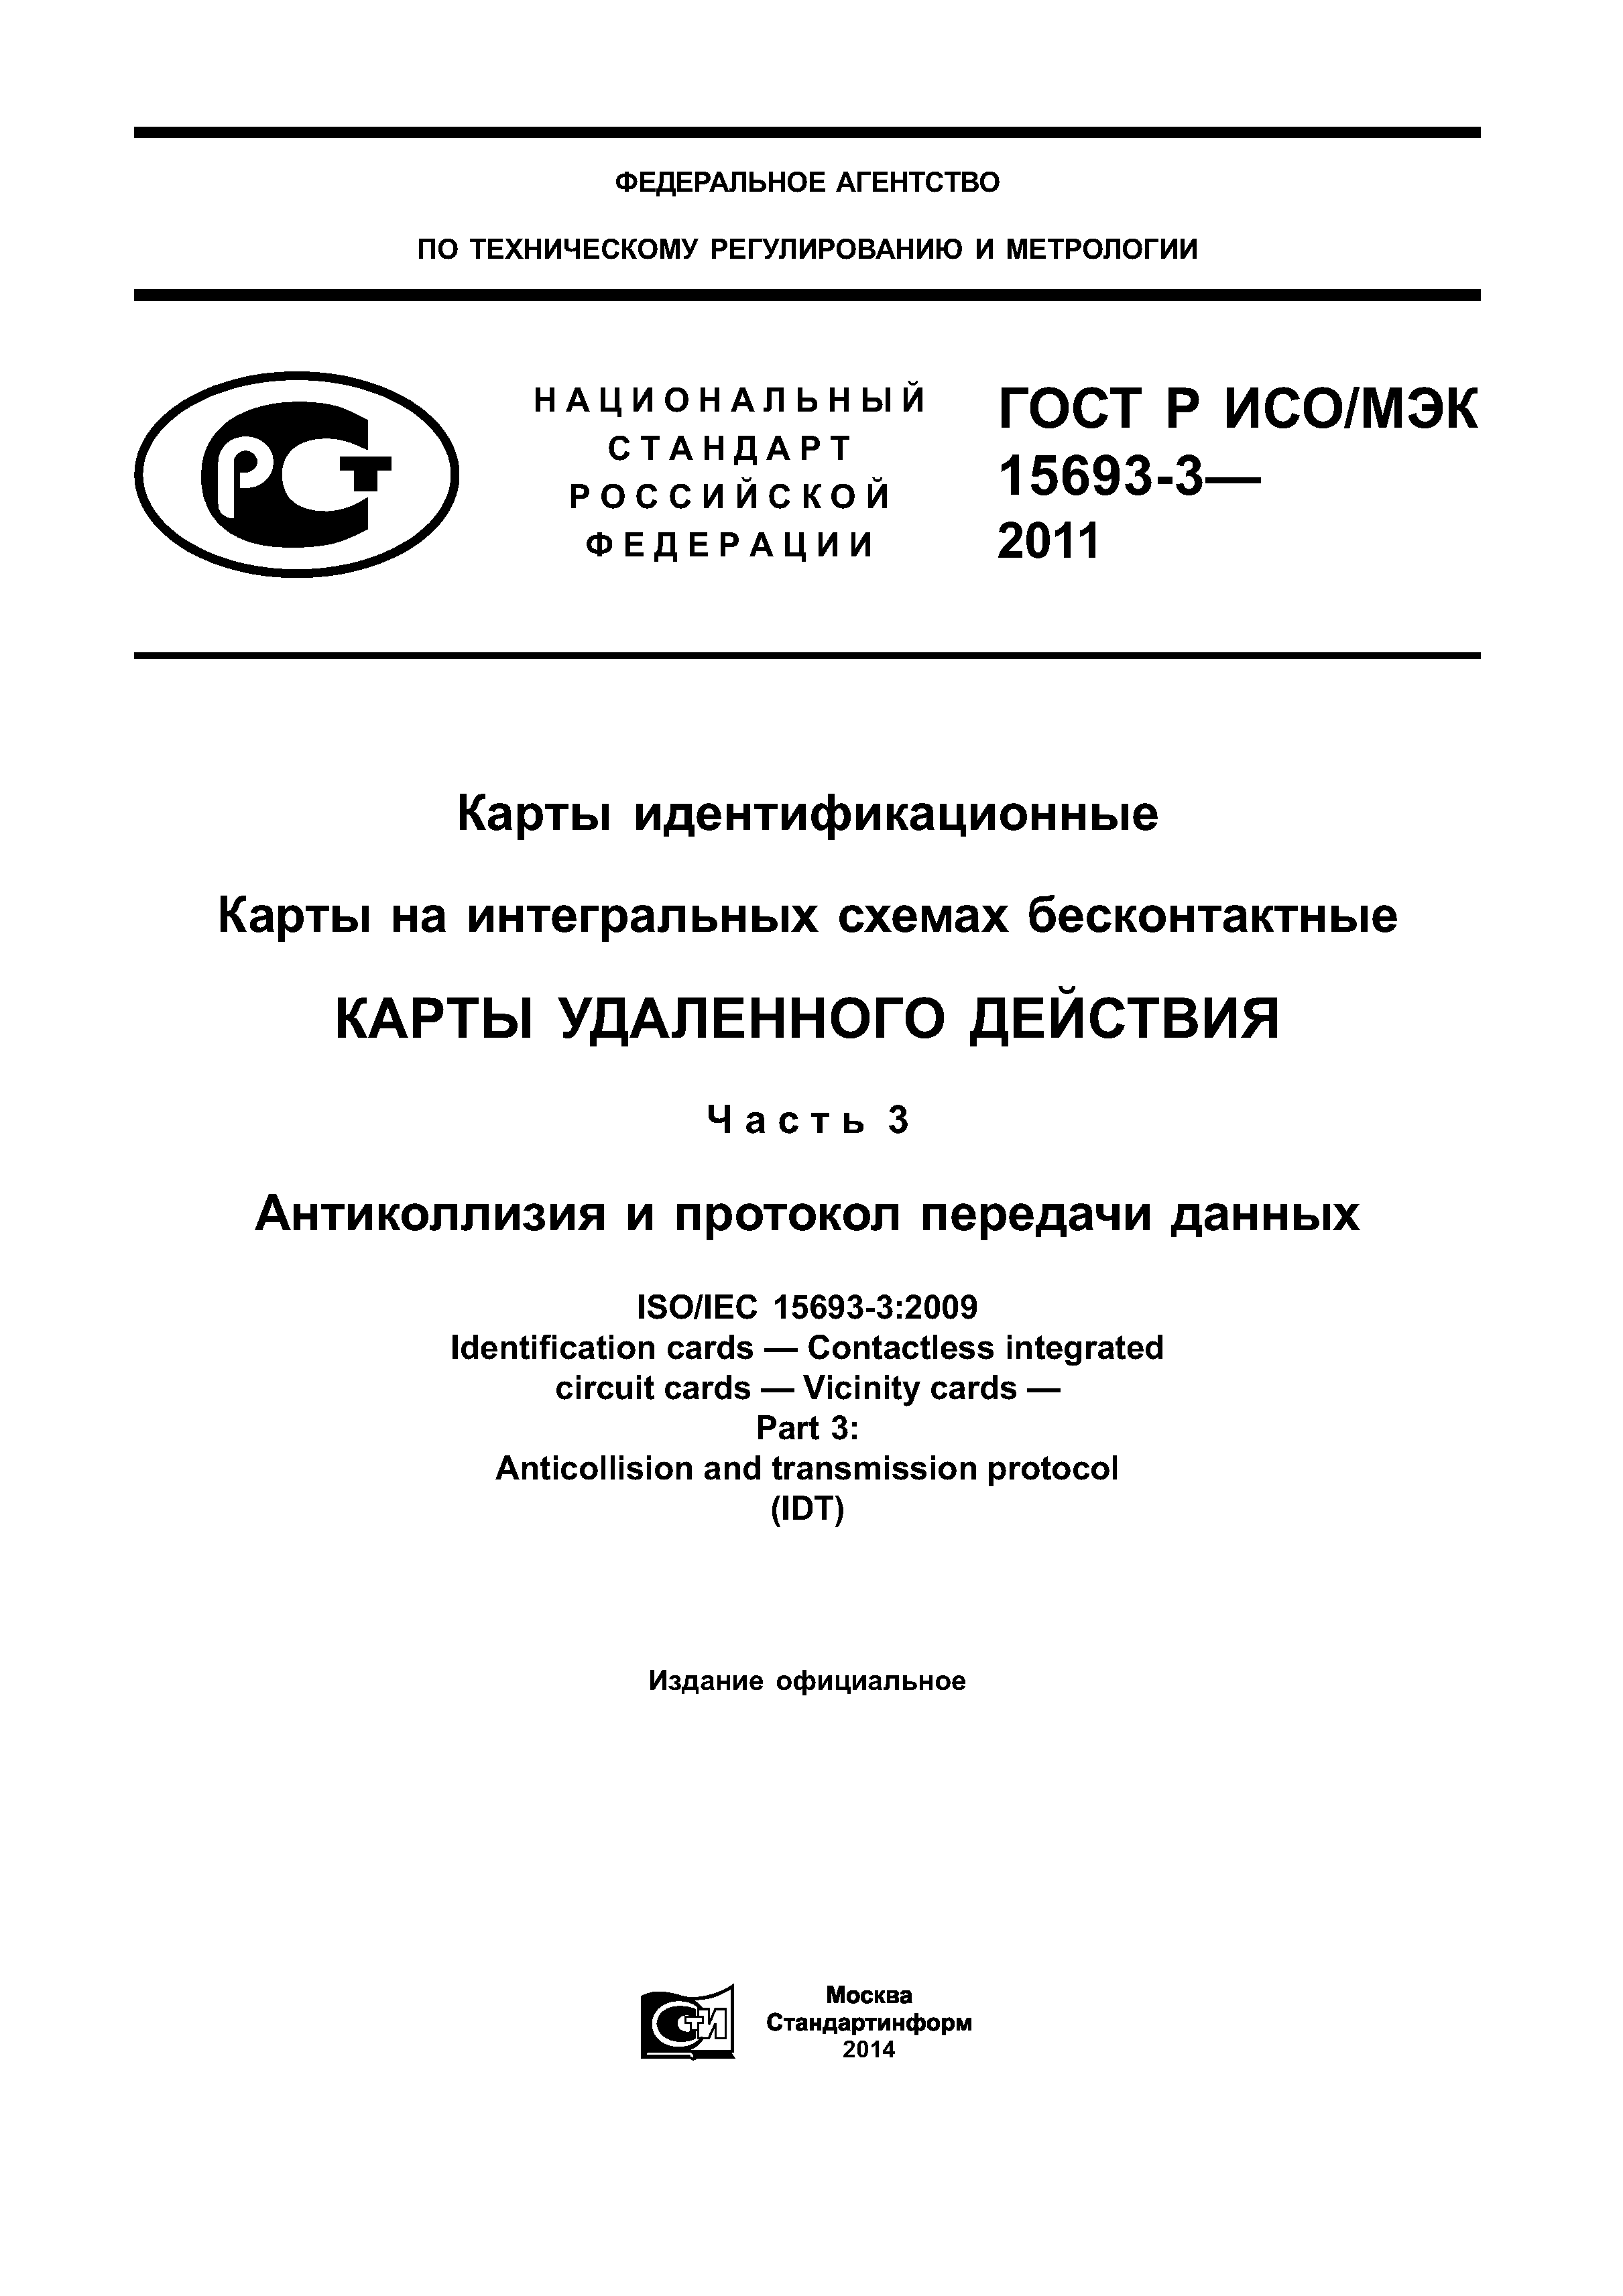 ГОСТ Р ИСО/МЭК 15693-3-2011